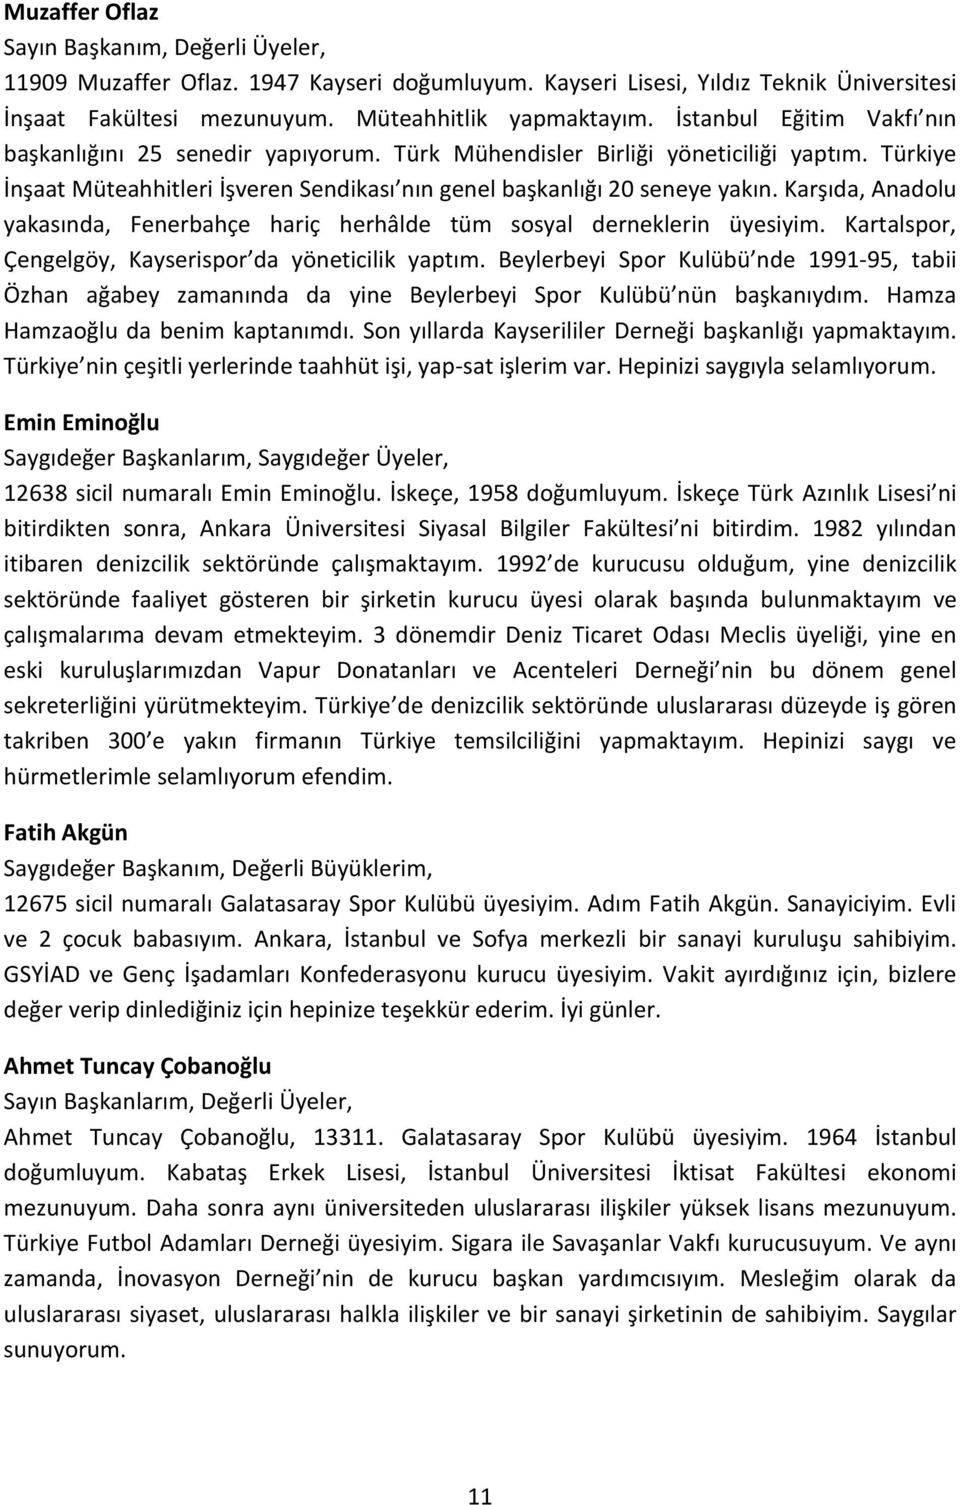 Karşıda, Anadolu yakasında, Fenerbahçe hariç herhâlde tüm sosyal derneklerin üyesiyim. Kartalspor, Çengelgöy, Kayserispor da yöneticilik yaptım.